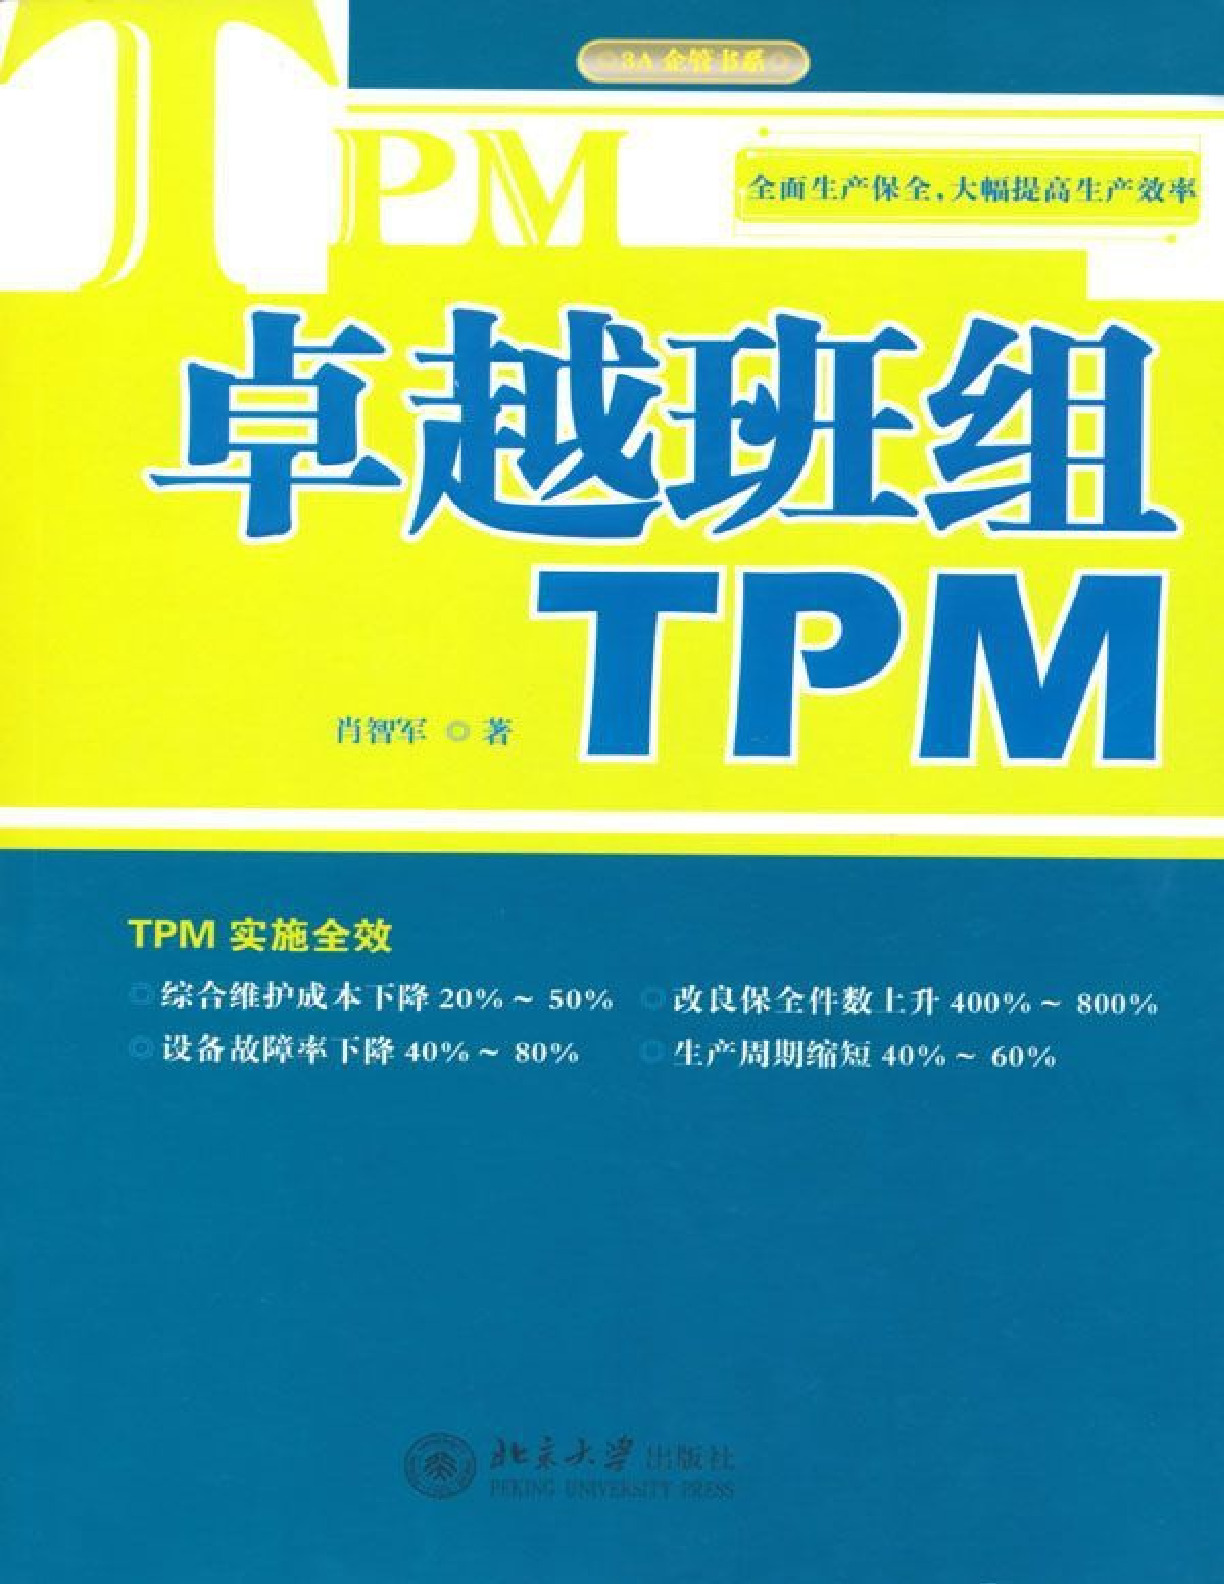 卓越班组TPM – 肖智军